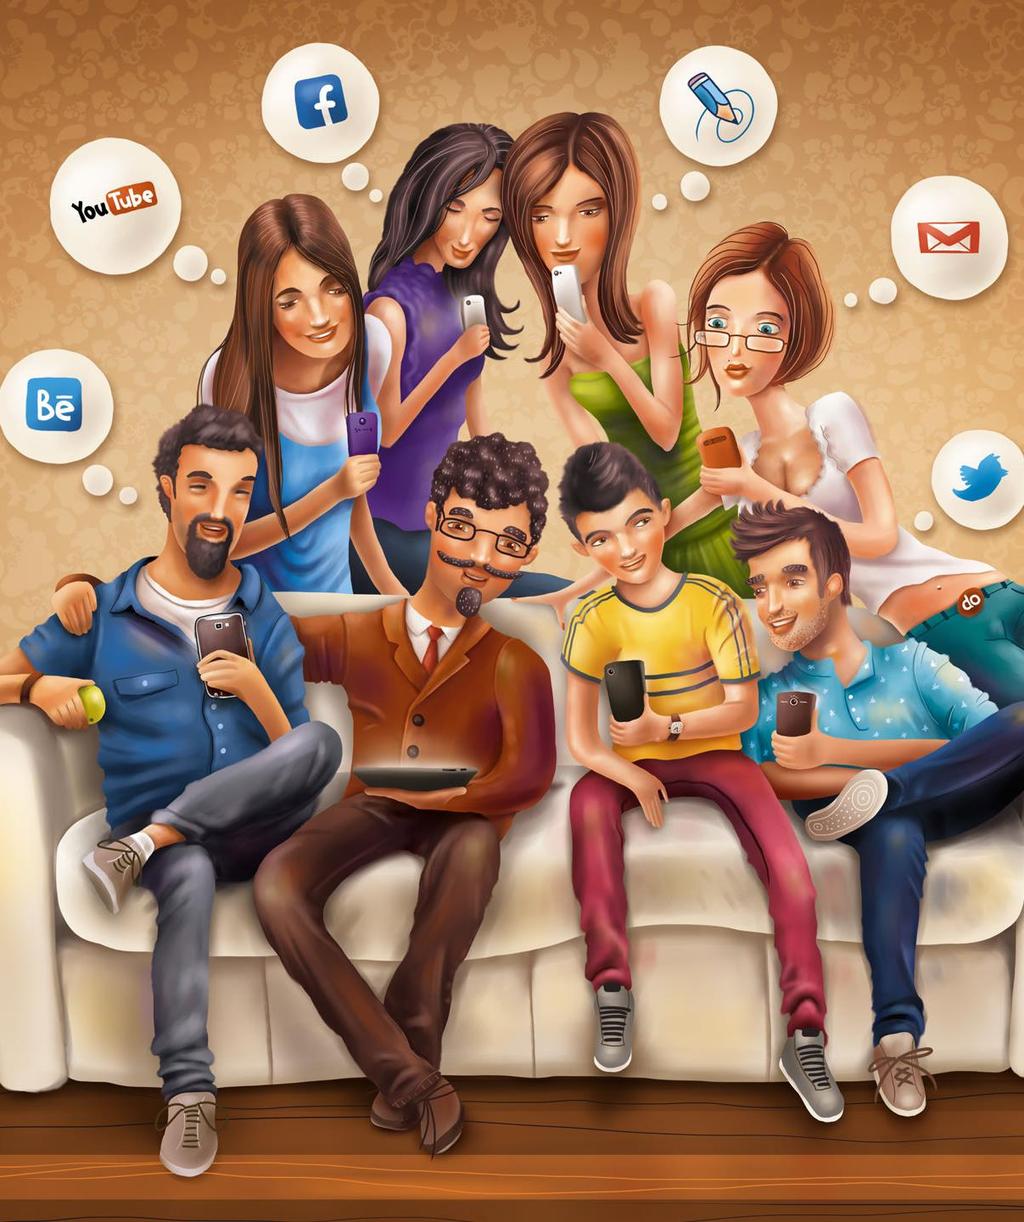 SUMMERING o Sociala medier kan vara Internetforum, sociala nätverkstjänster, Videokanaler, bloggar, wikier, poddradio, chattar, artikelkommentarer.